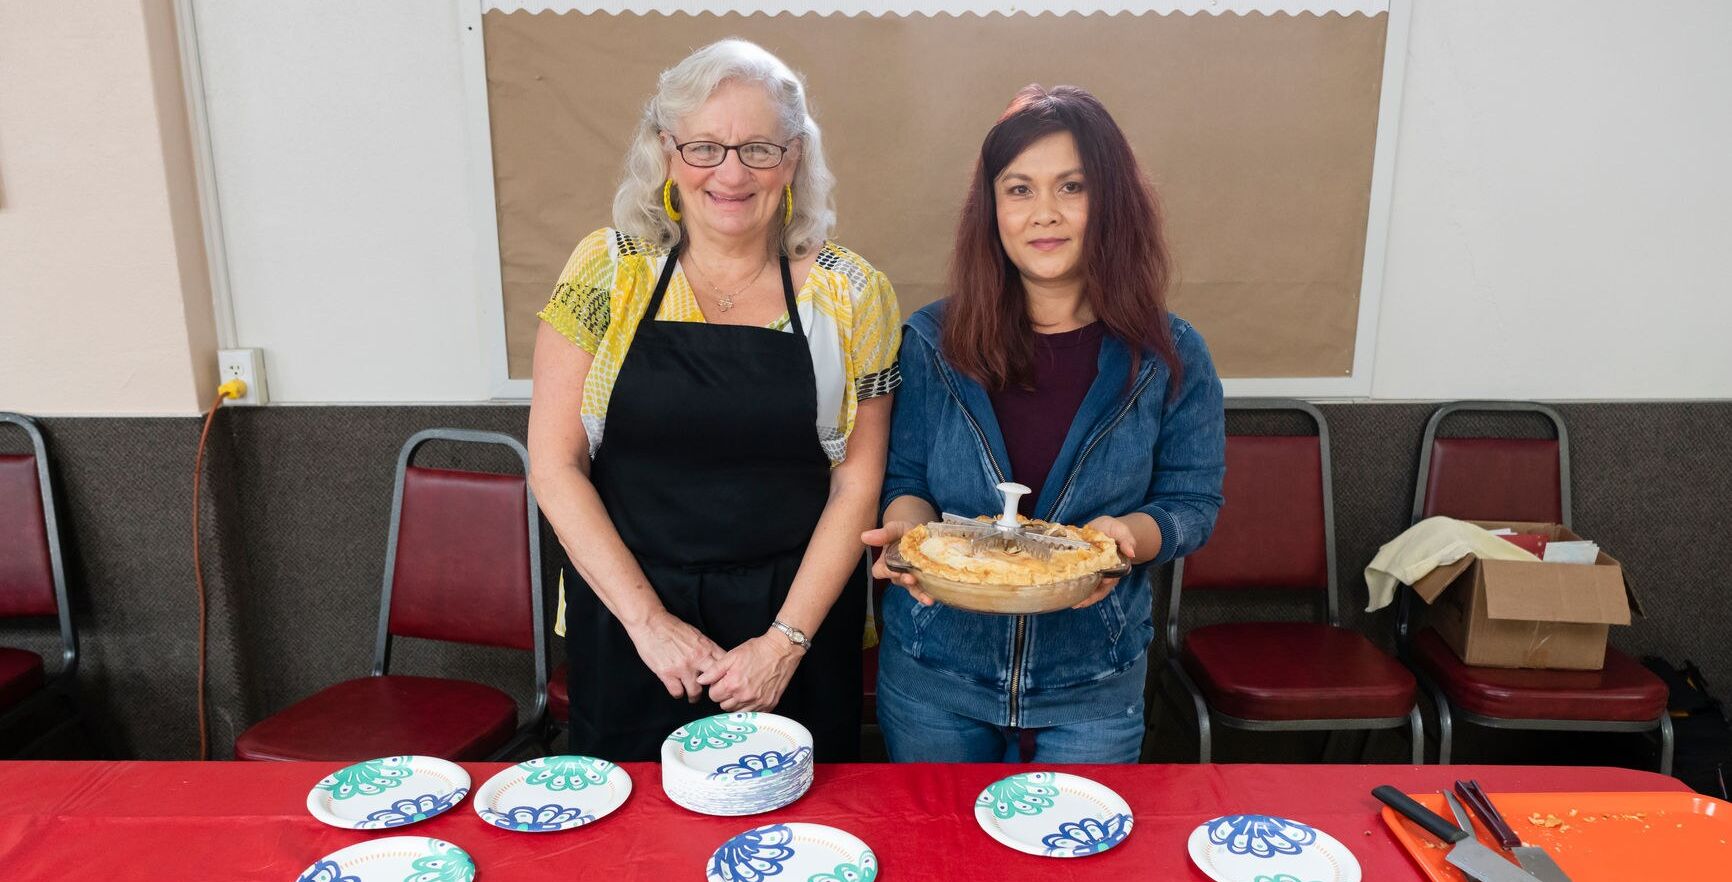 Two women serving dessert